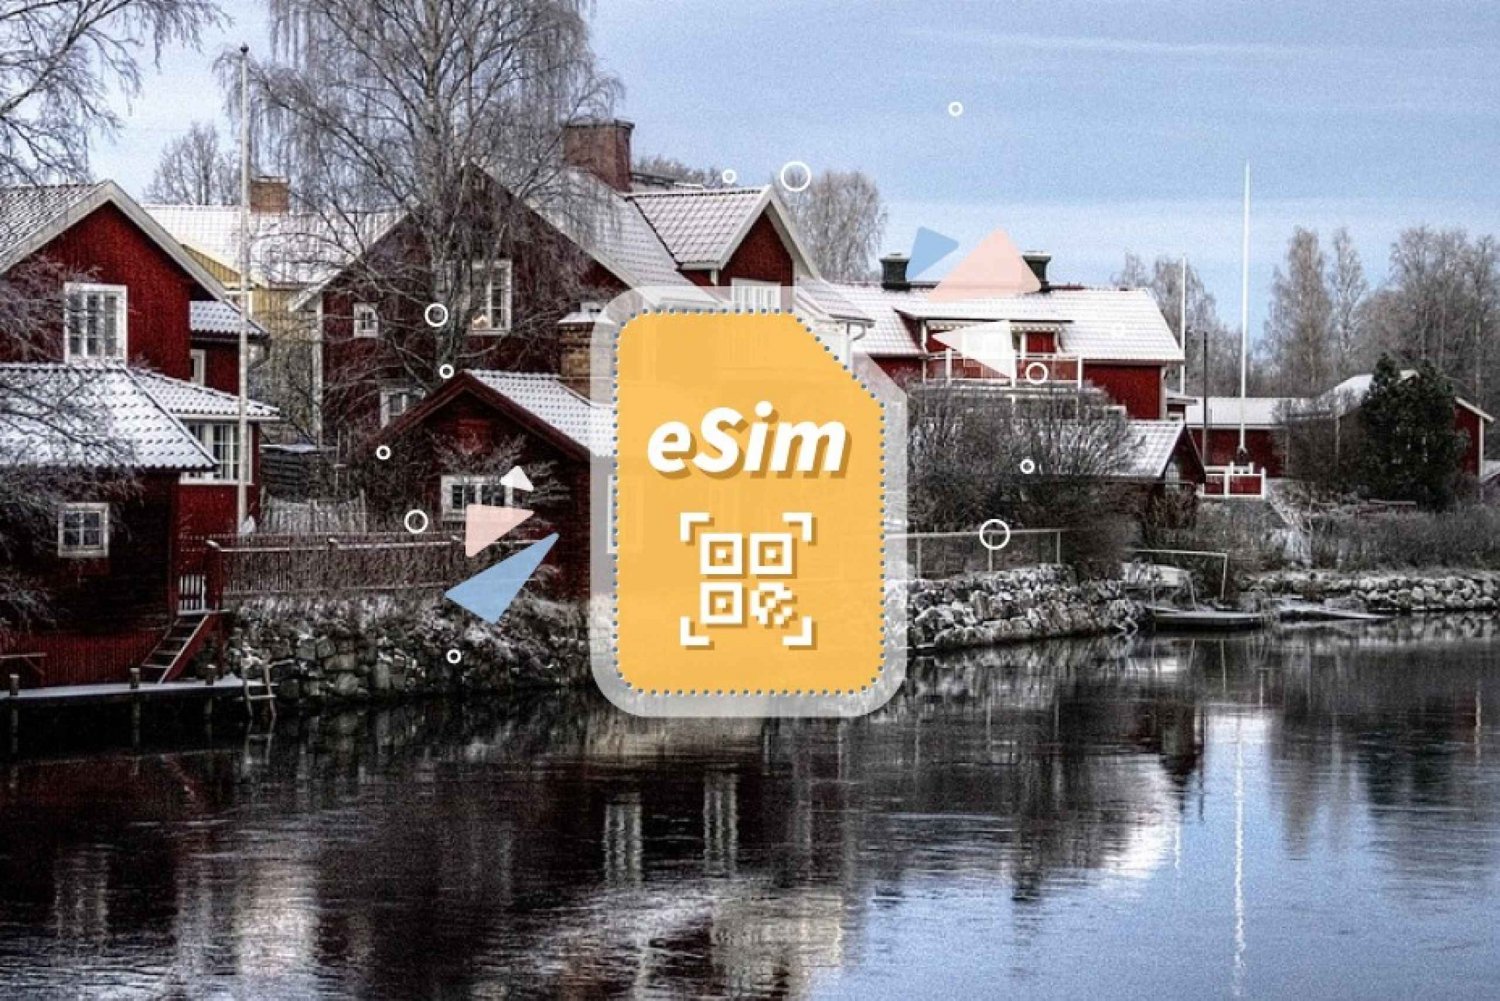 Szwecja/Europa: Pakiet danych mobilnych eSim